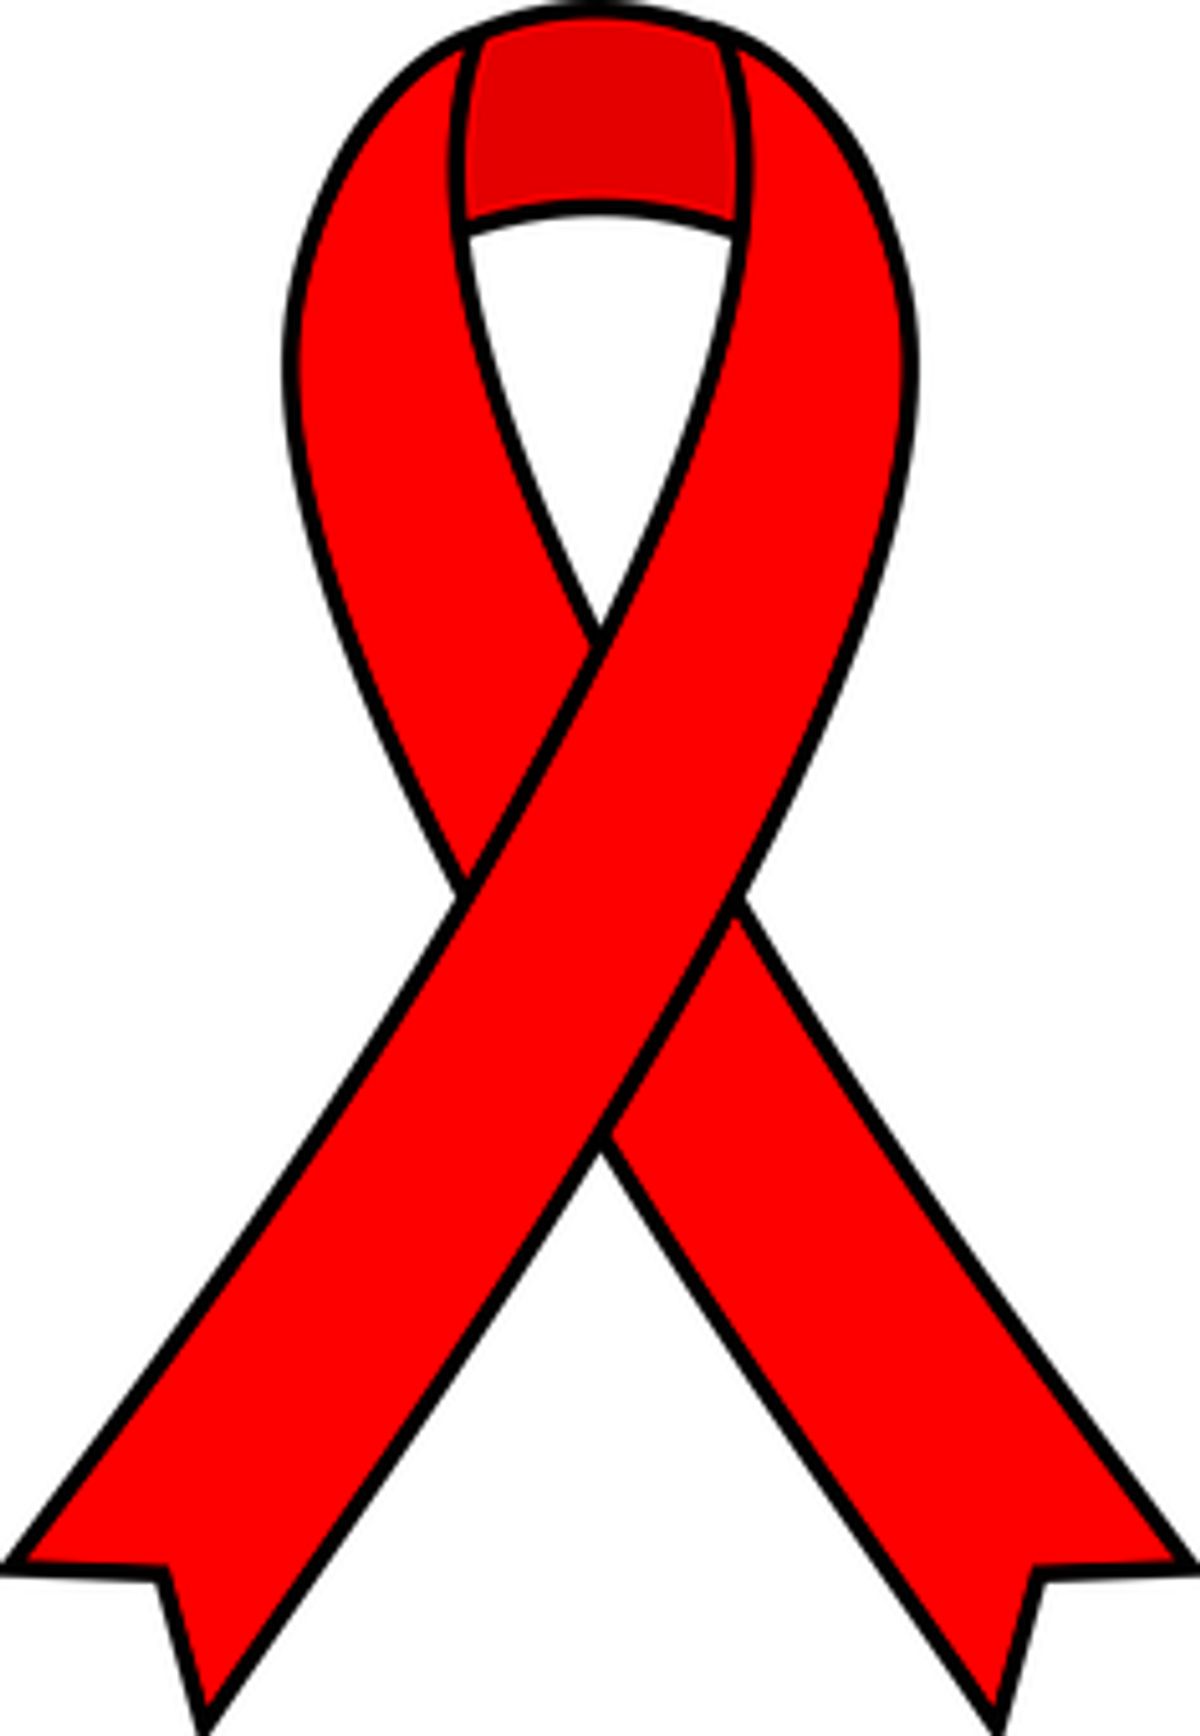 HIV-AIDS Phobia